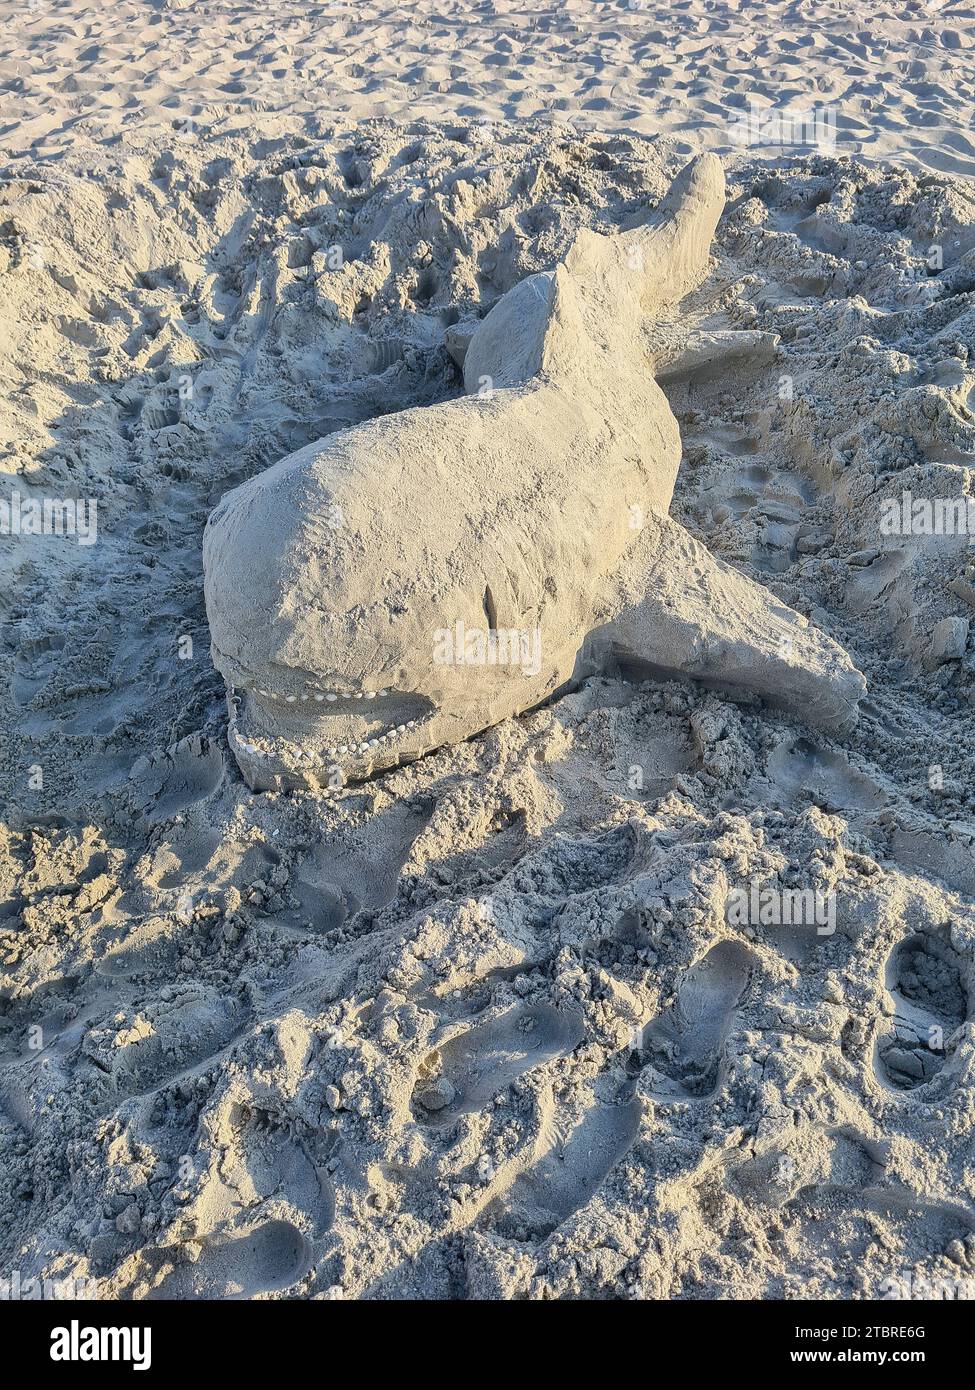 Baleine de sable, sculpture en sable sur la plage de sable clair de Prerow, mer Baltique, péninsule de Fischland-Darß-Zingst, Mecklembourg-Poméranie occidentale, Allemagne Banque D'Images